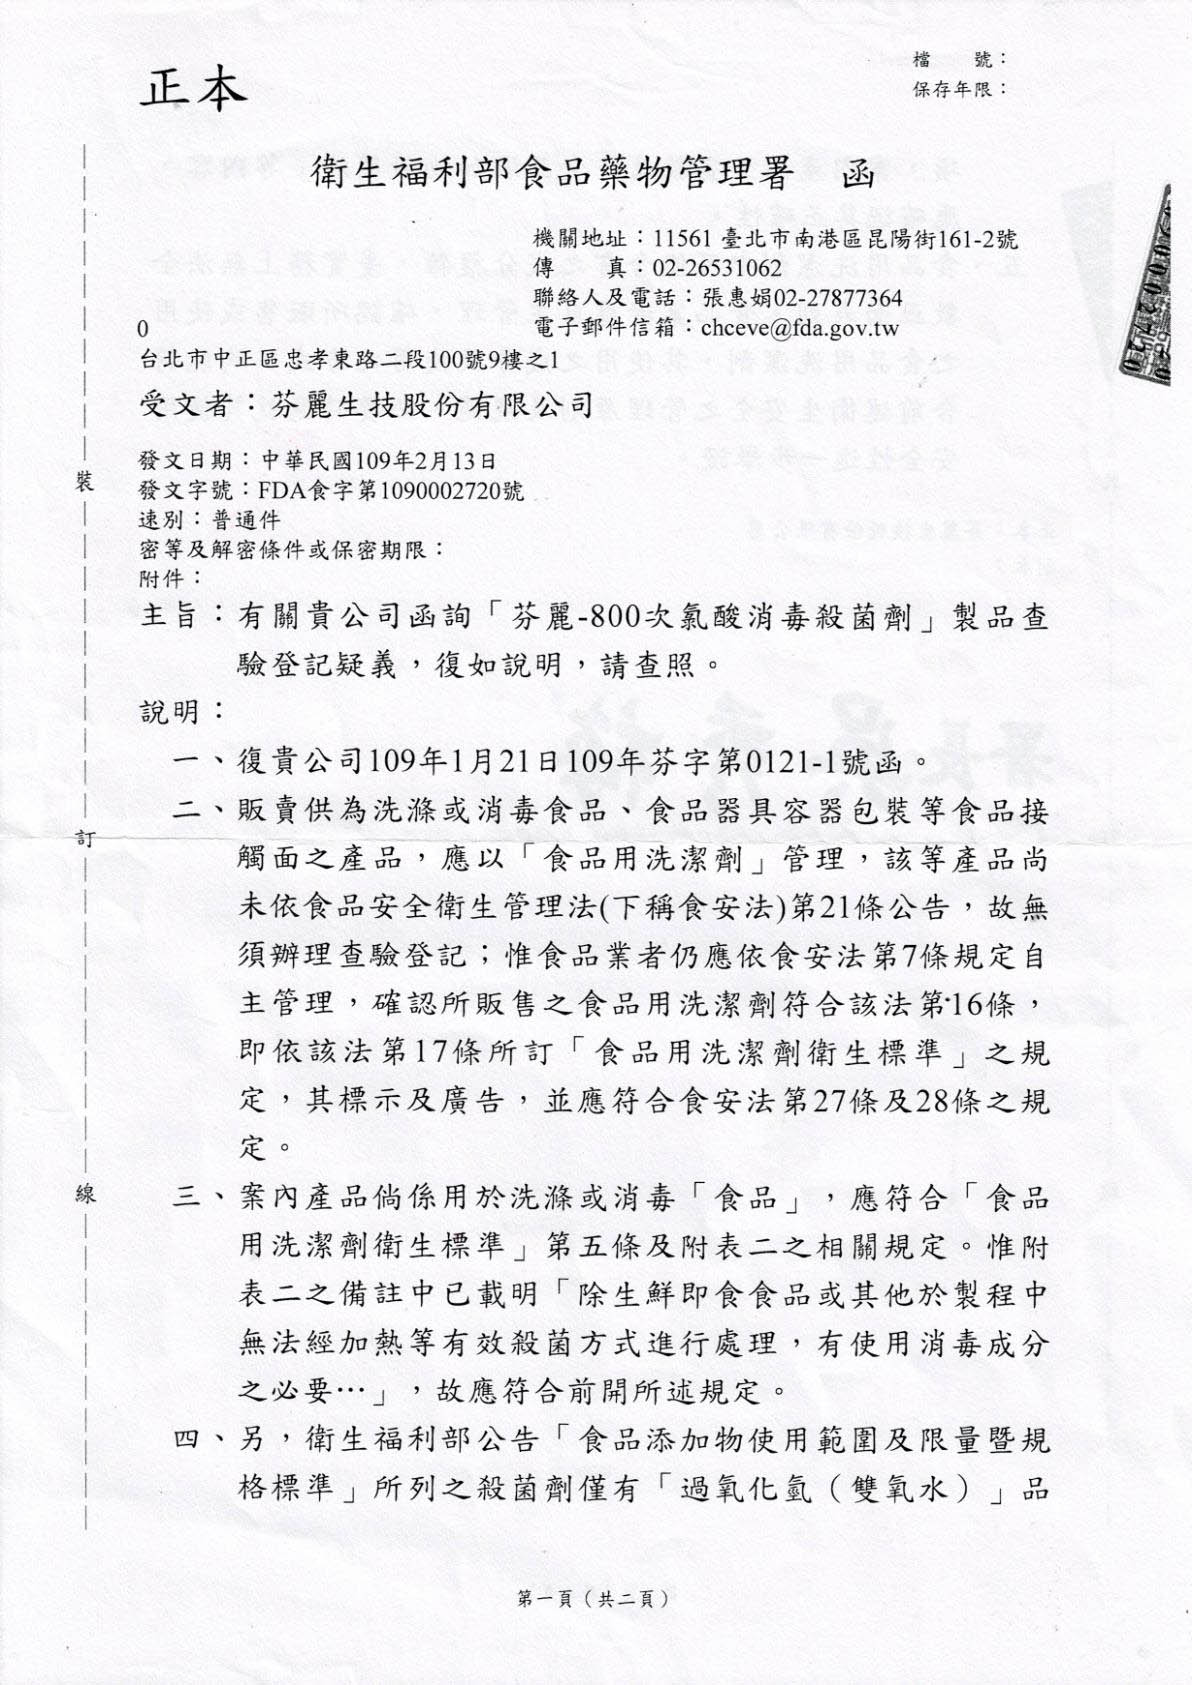 台湾卫福部、环保署对芬丽-800次氯酸生产销售之释函